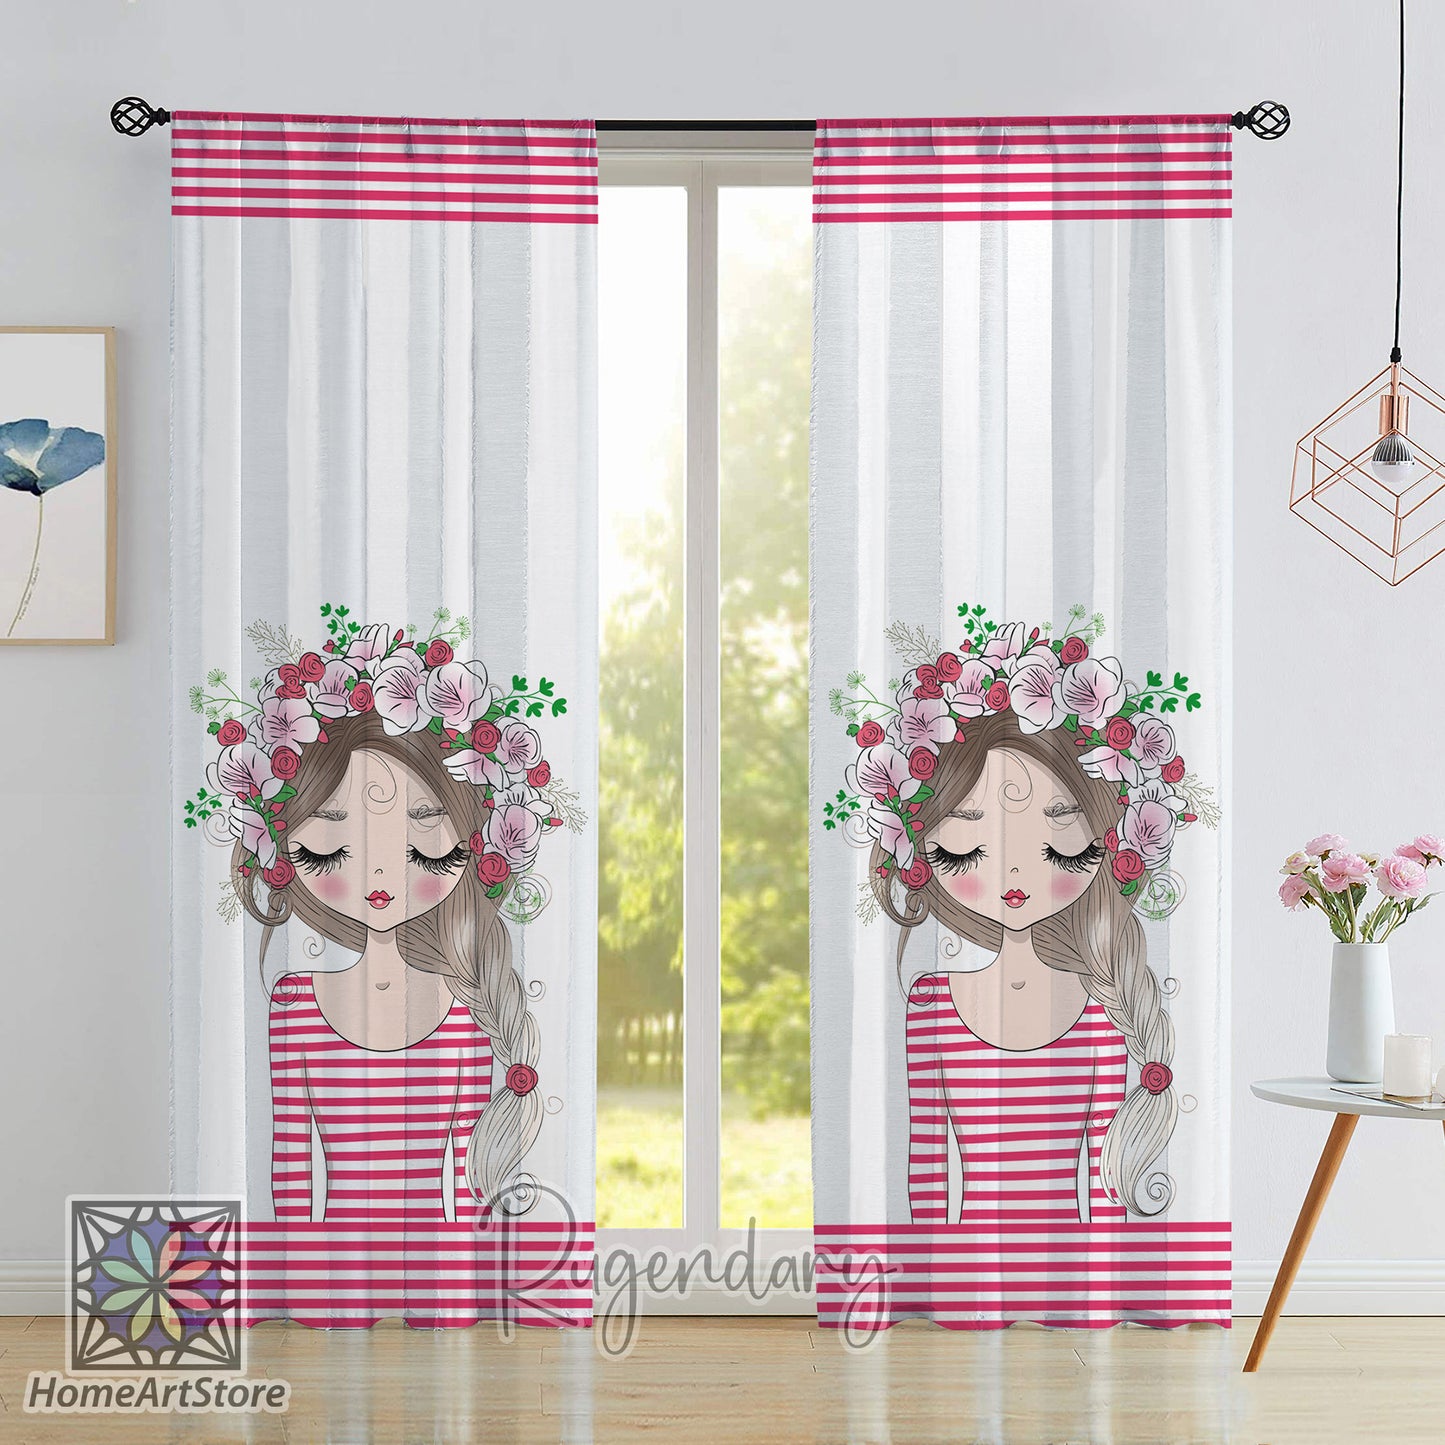 Cute Girl Themed Curtain, Floral Pattern Curtain, Baby Girl Room Decor, Flower Curtain, Nursery Curtain, Striped Curtain